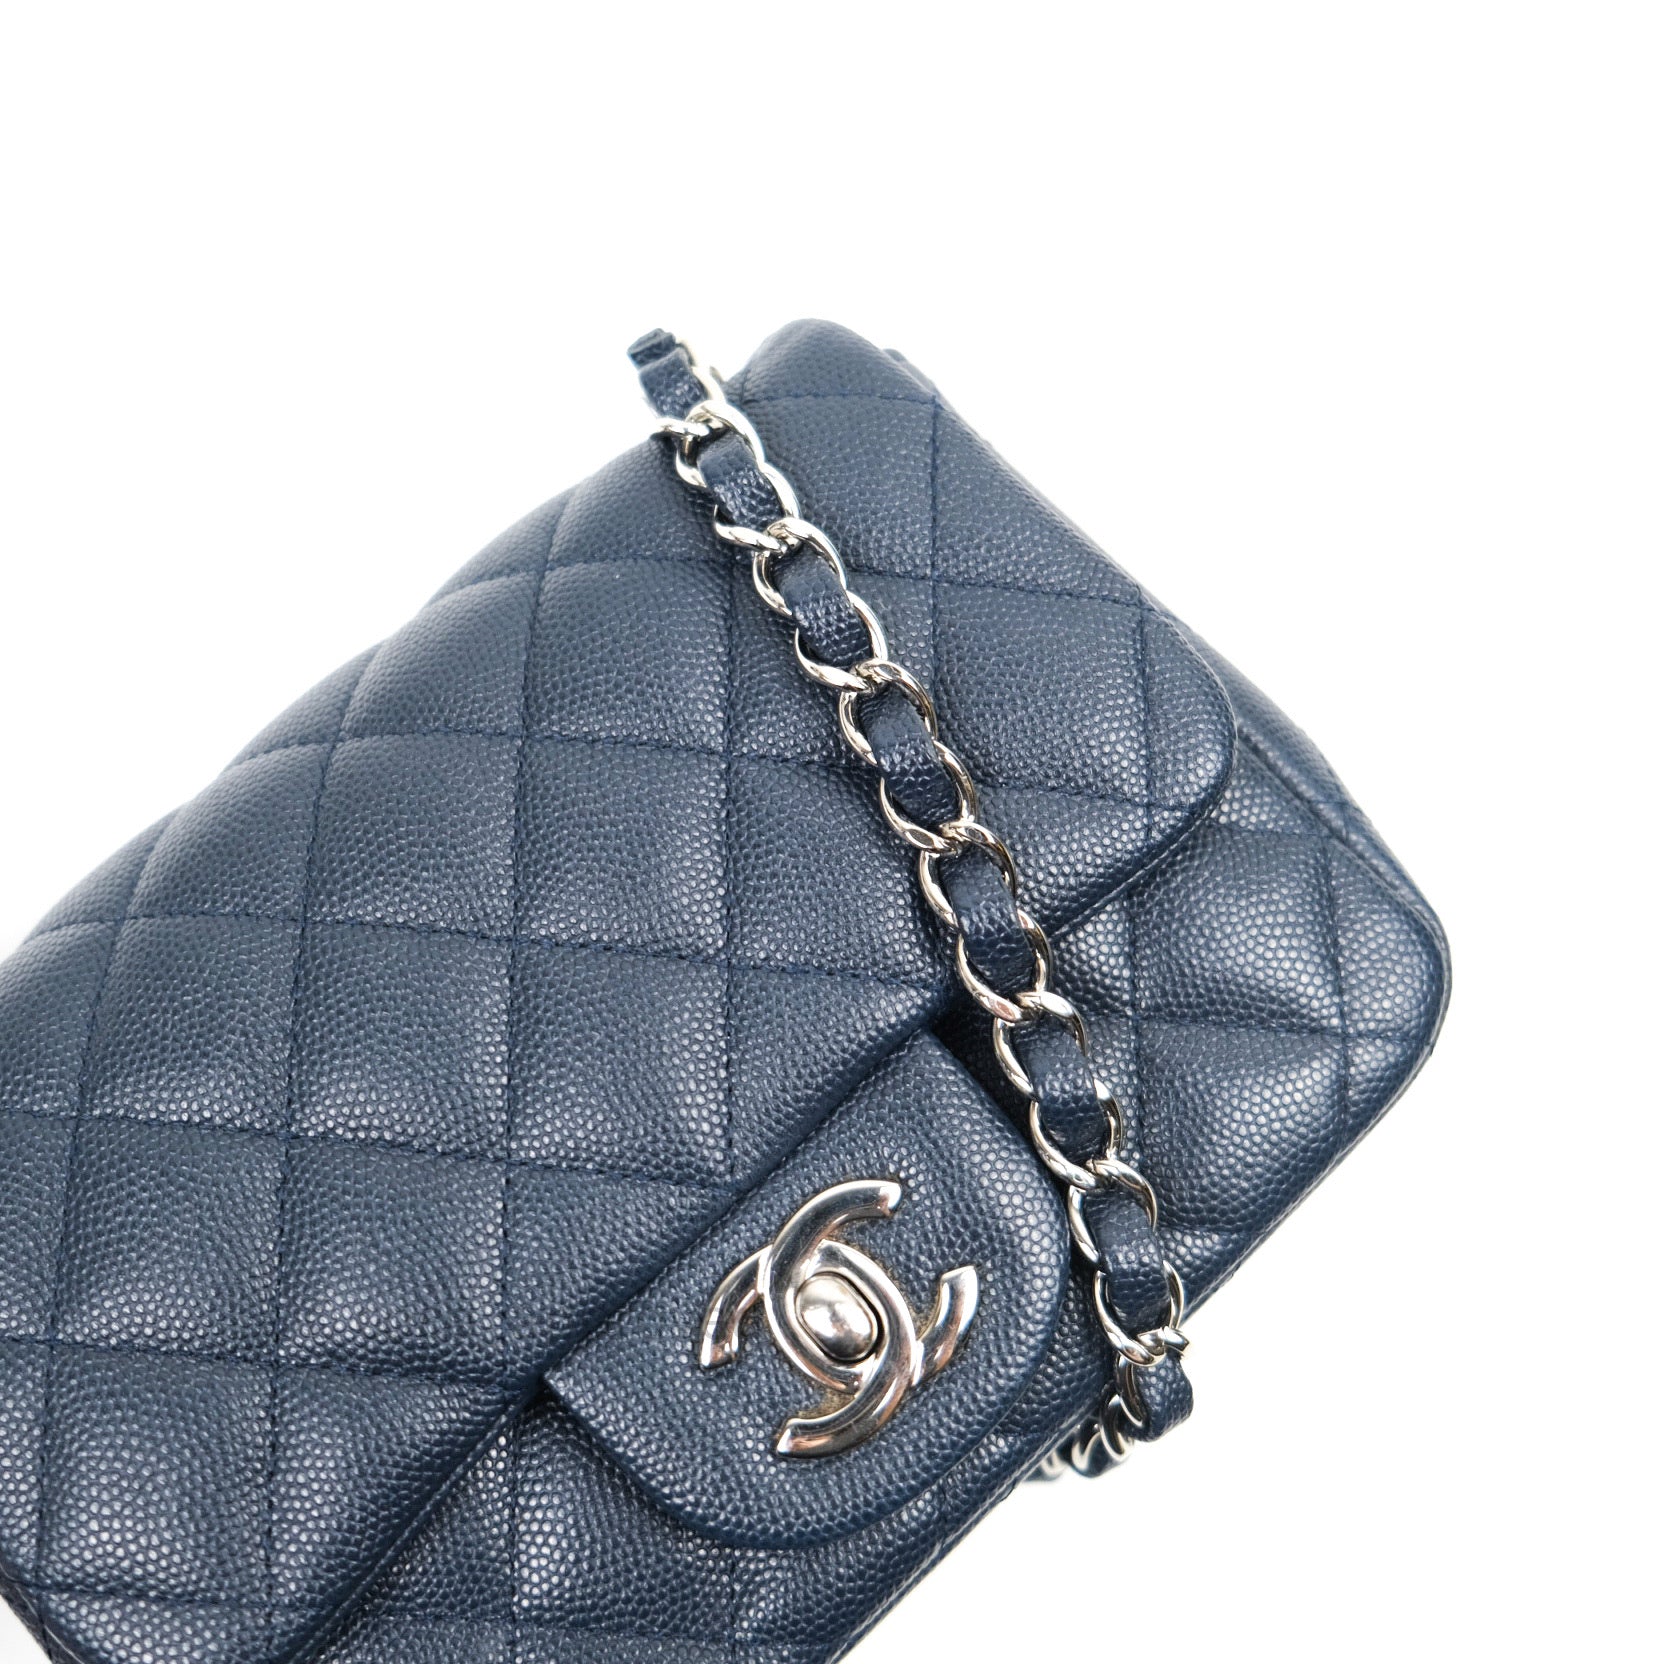 SOLD. Chanel Mini Caviar bag